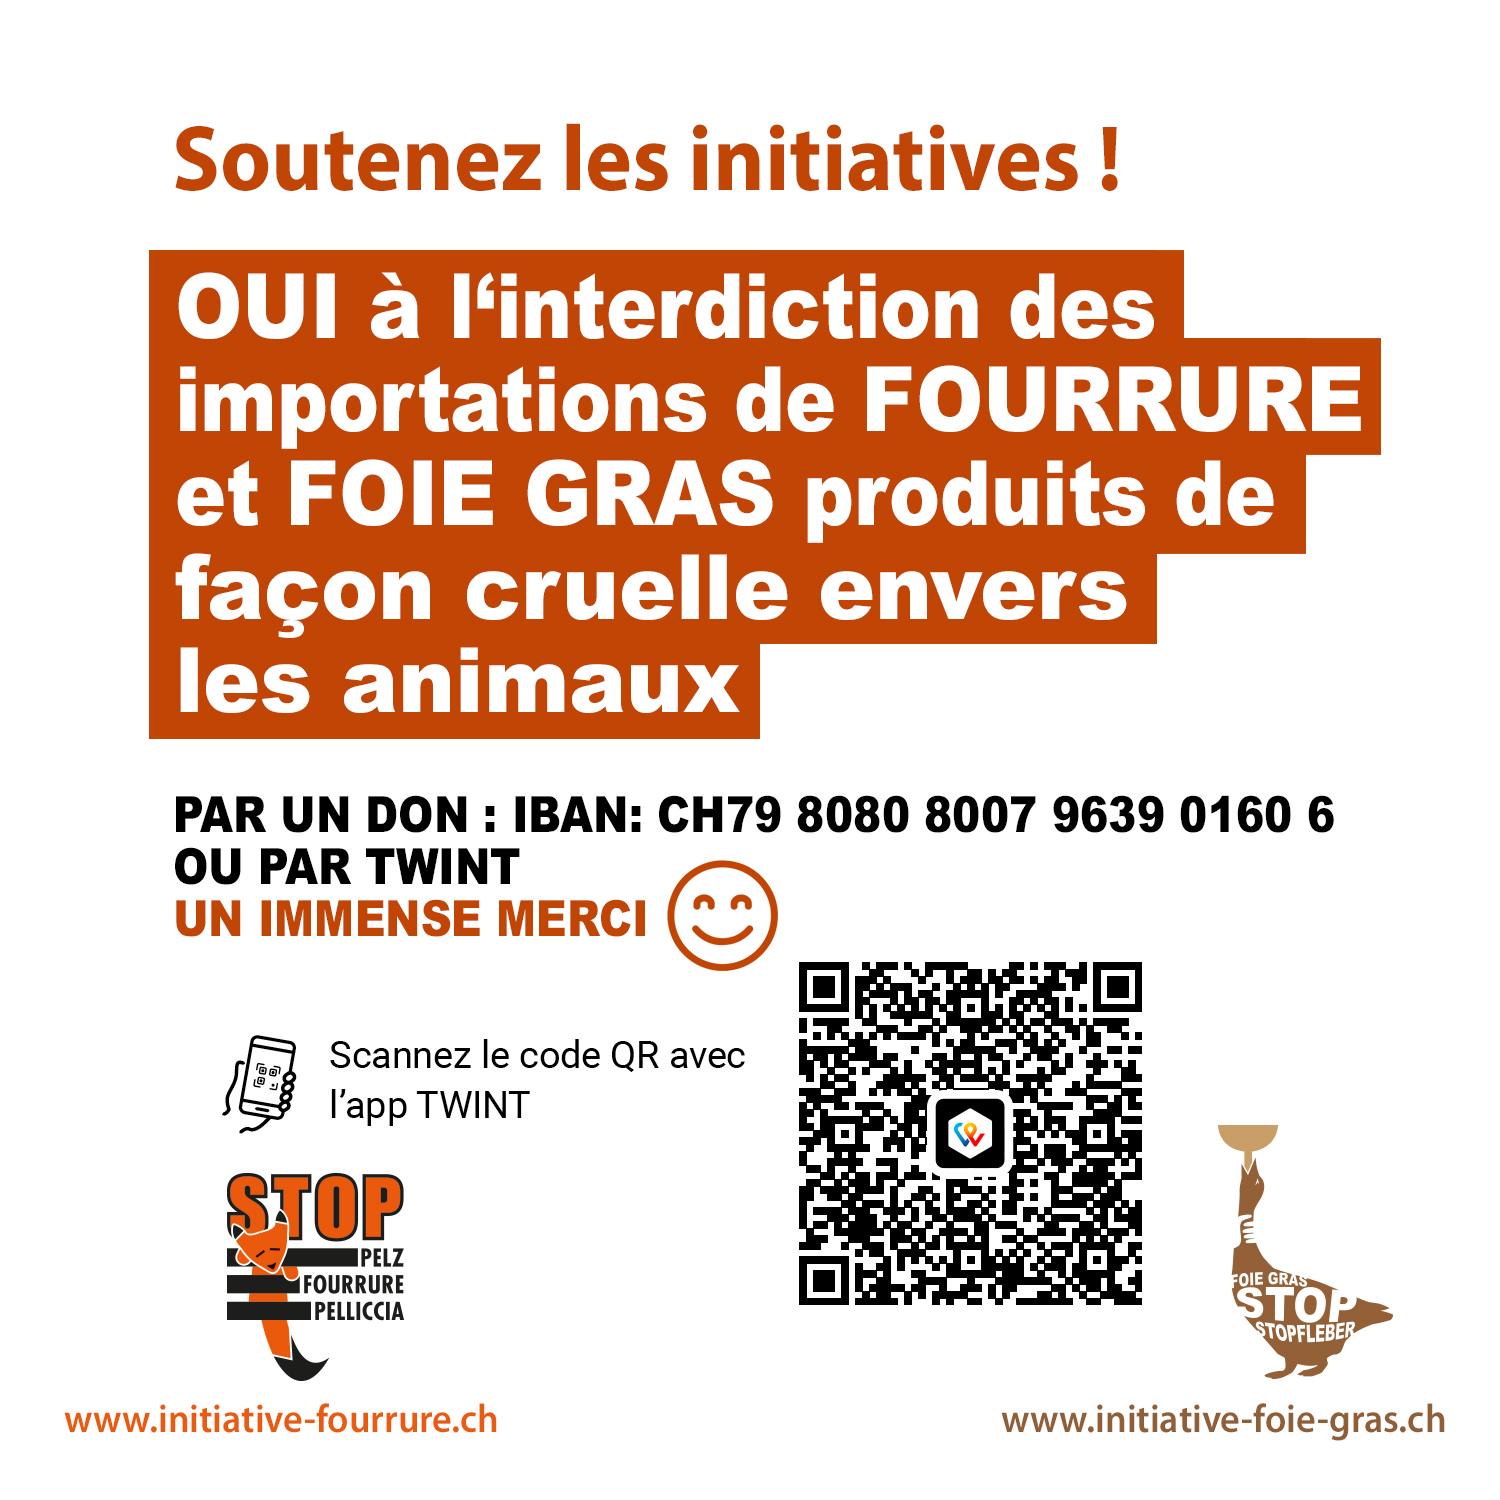 Faire un don pour les initiatives fourrure – foie gras